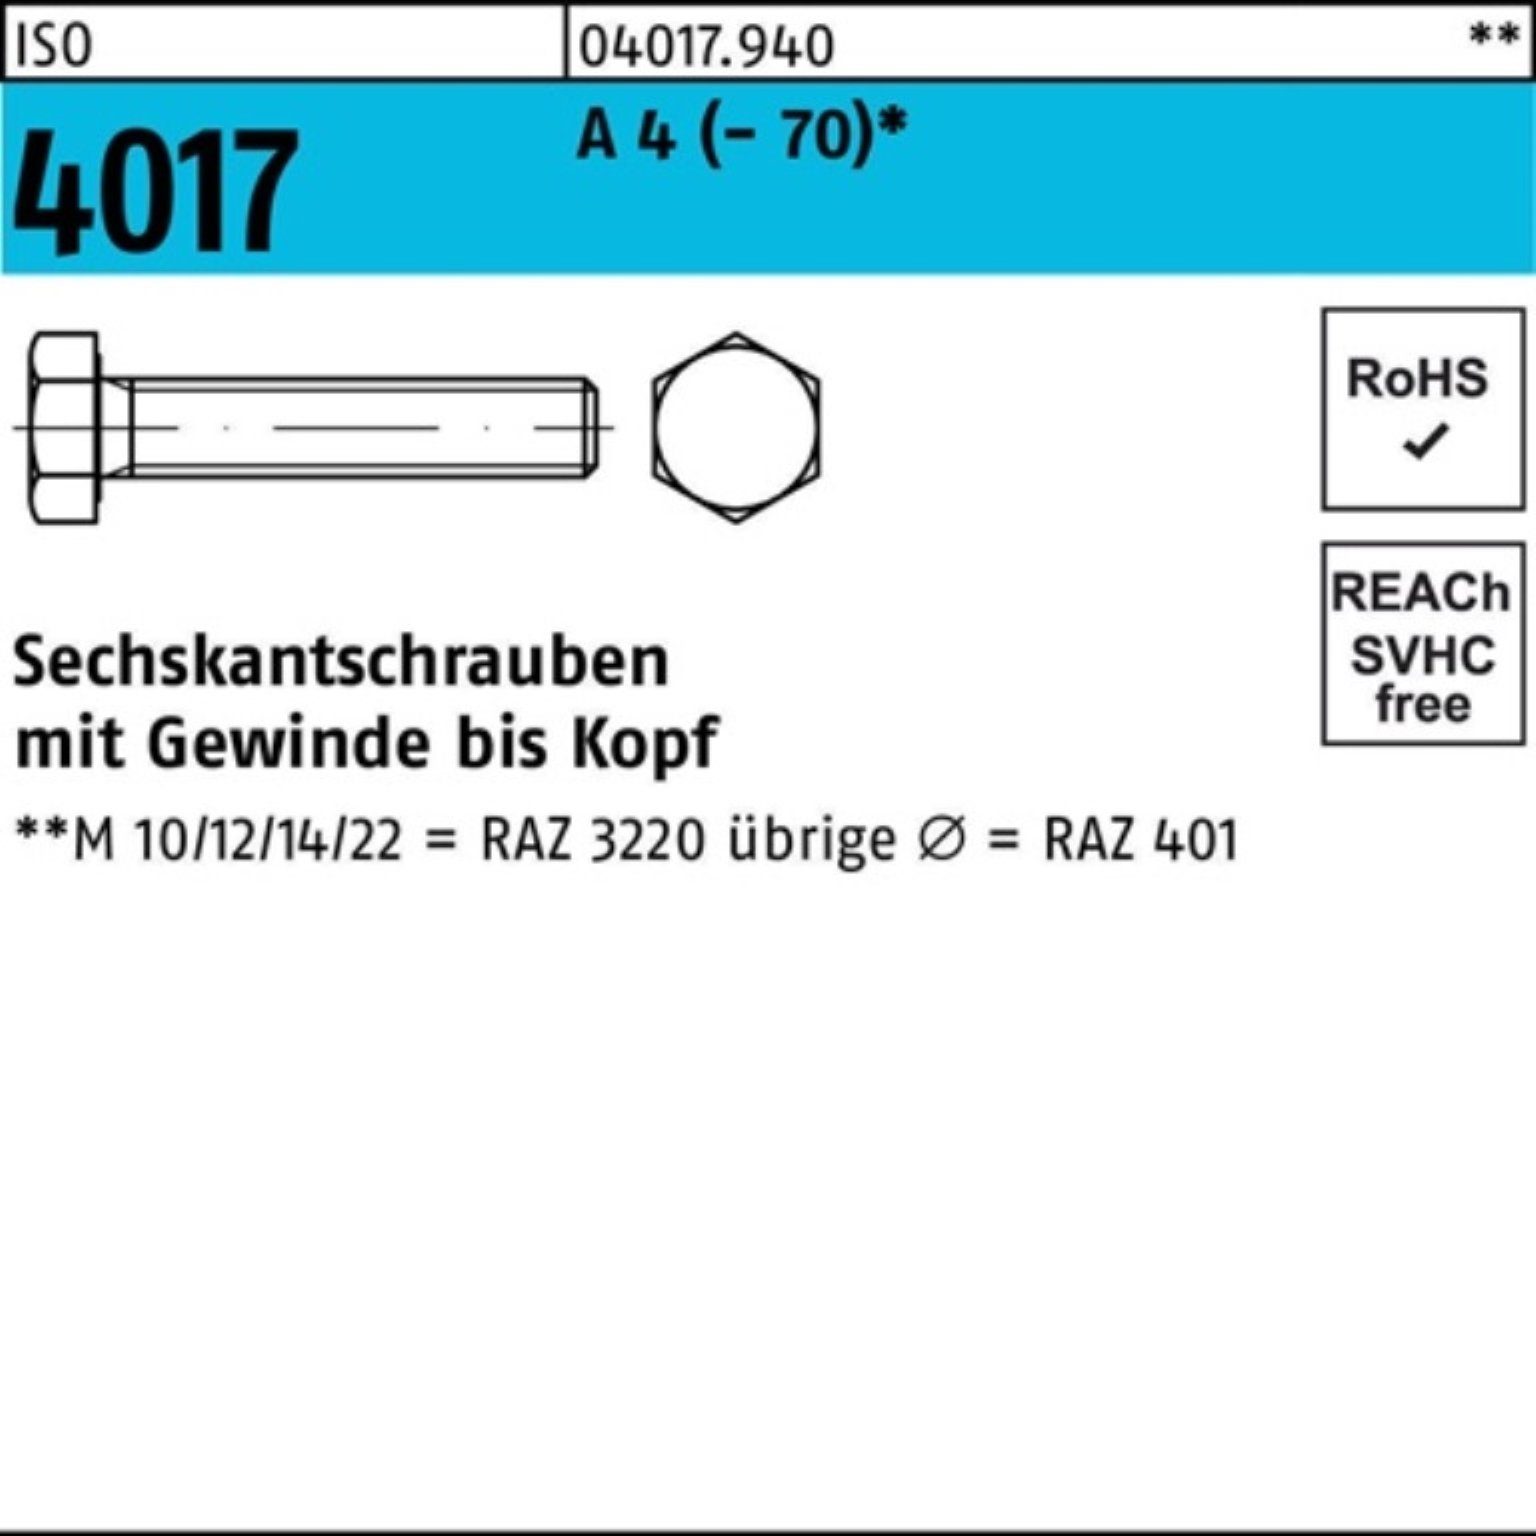 Sechskantschraube 100er Bufab Sechskantschraube 4017 (70) 1 Stück M18x I Pack A ISO VG 4 30